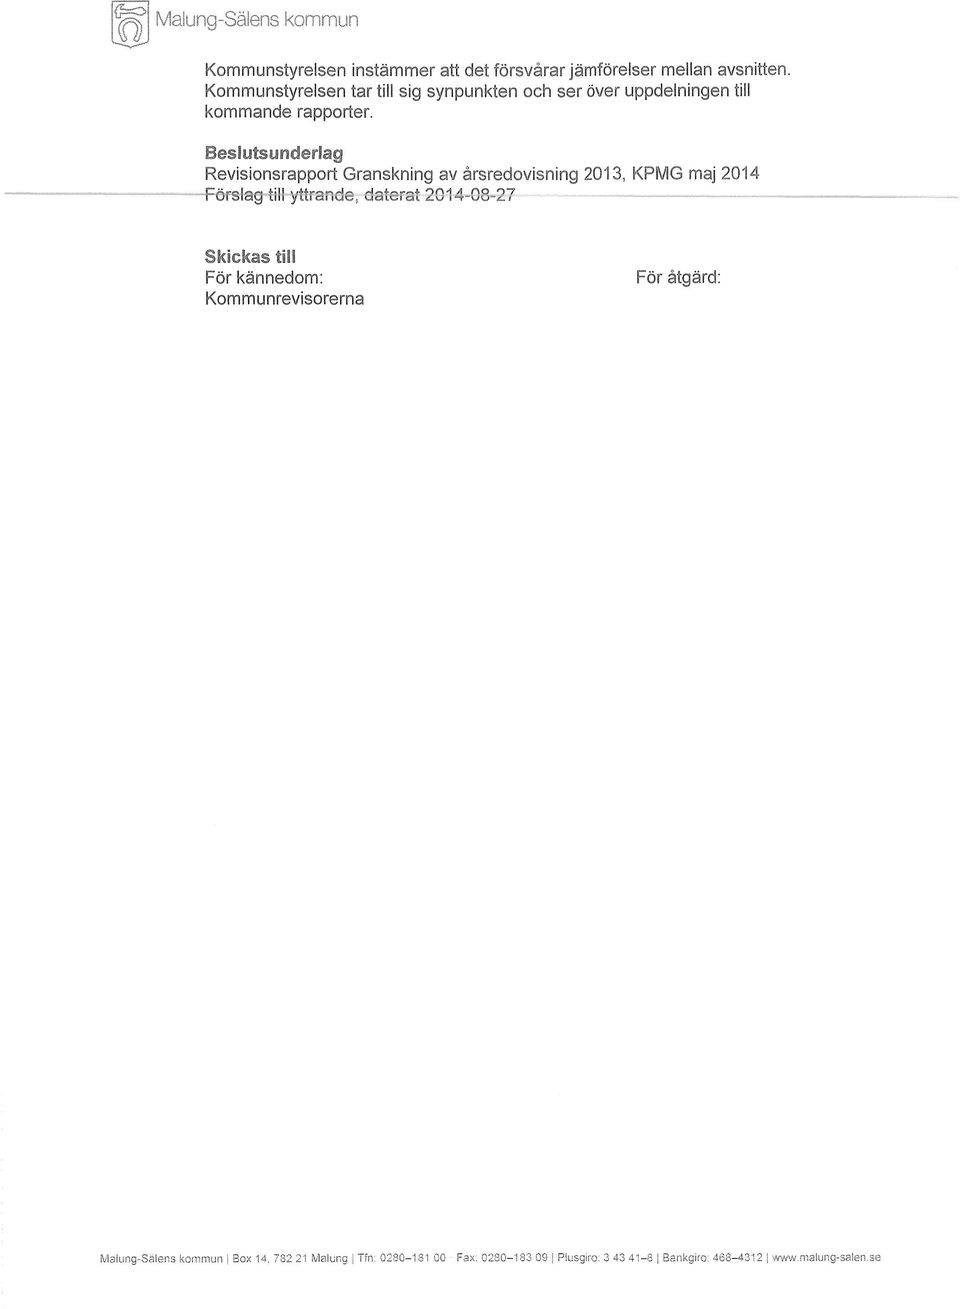 Beslutsunderlag Revisionsrapport Granskning av årsredovisning 2013, KPMG maj 2014-2014-03-27 - ~ Skickas till För